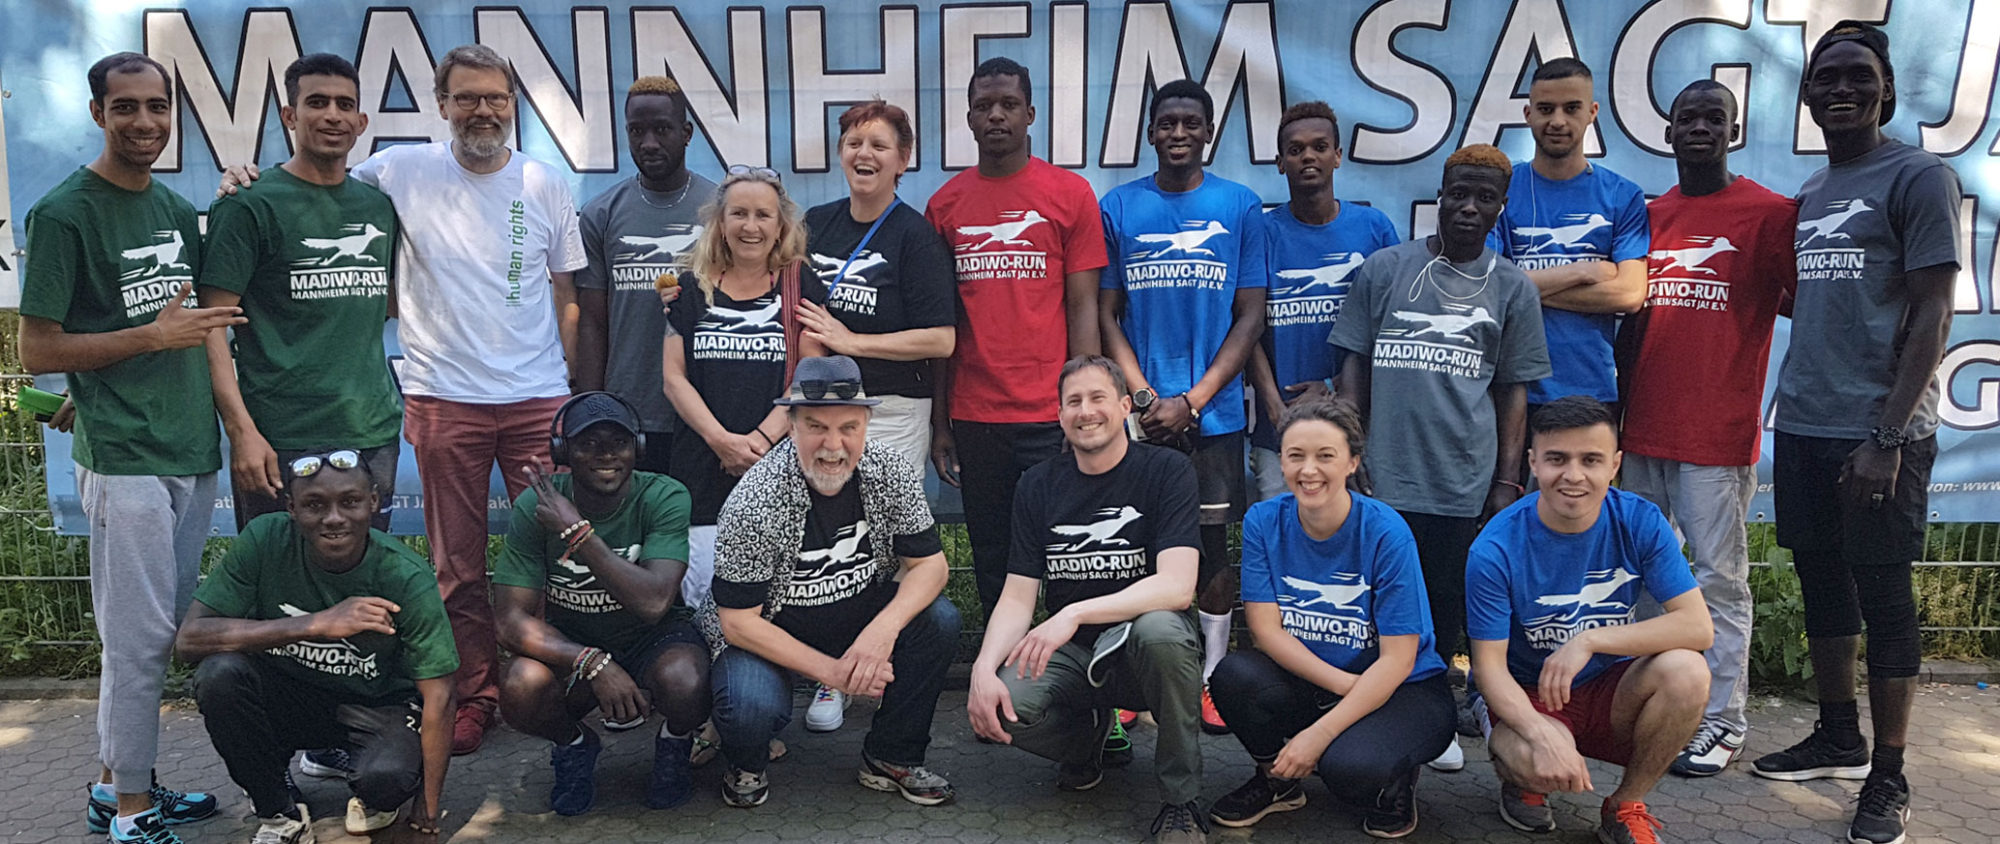 Läuferteams des ersten Mannheimer Diversity Run 2018 von Mannheim sagt Ja!